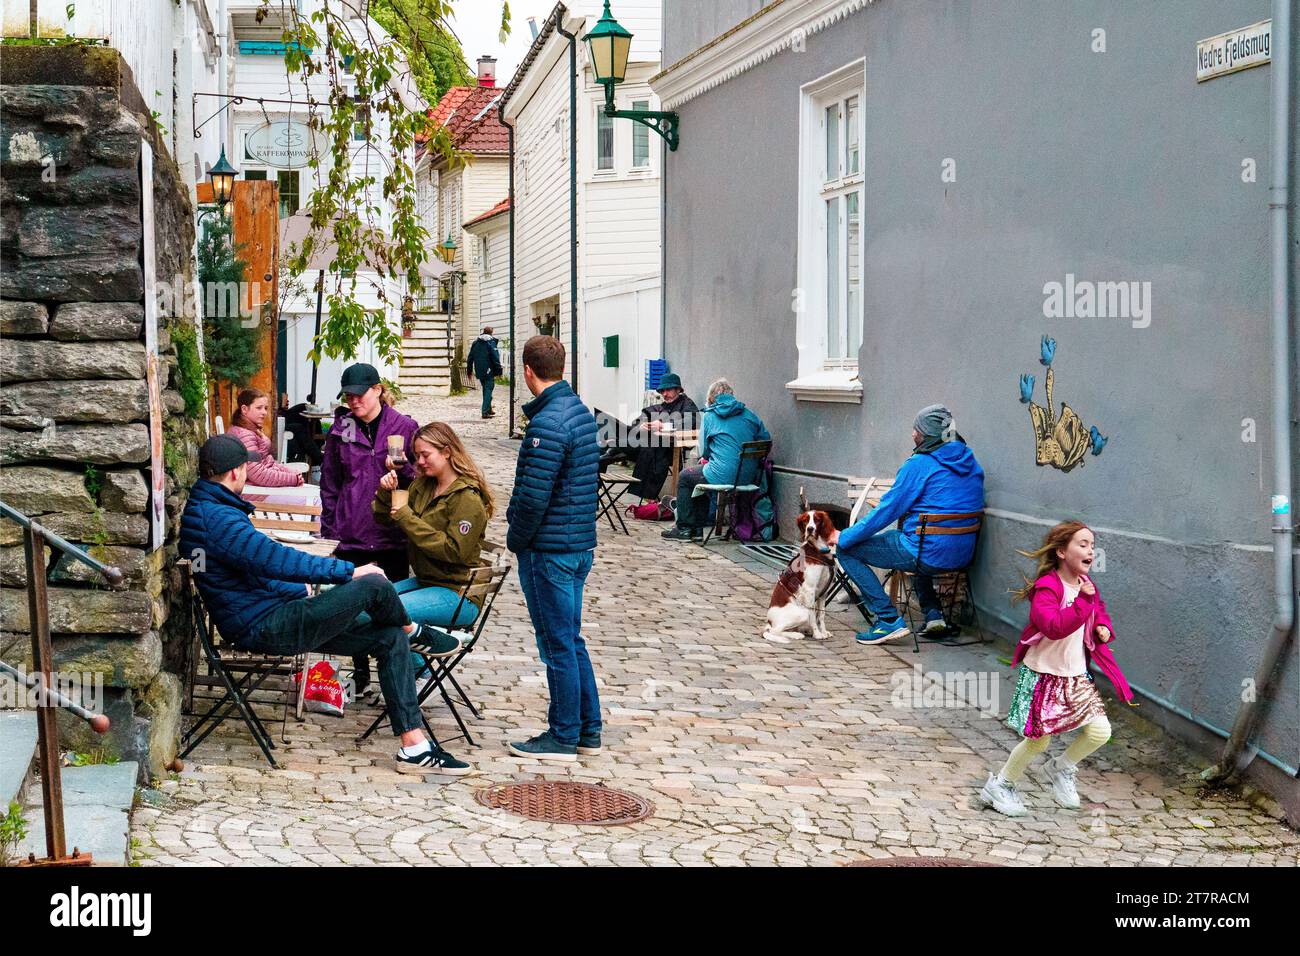 Street scene in central Bergen Stock Photo